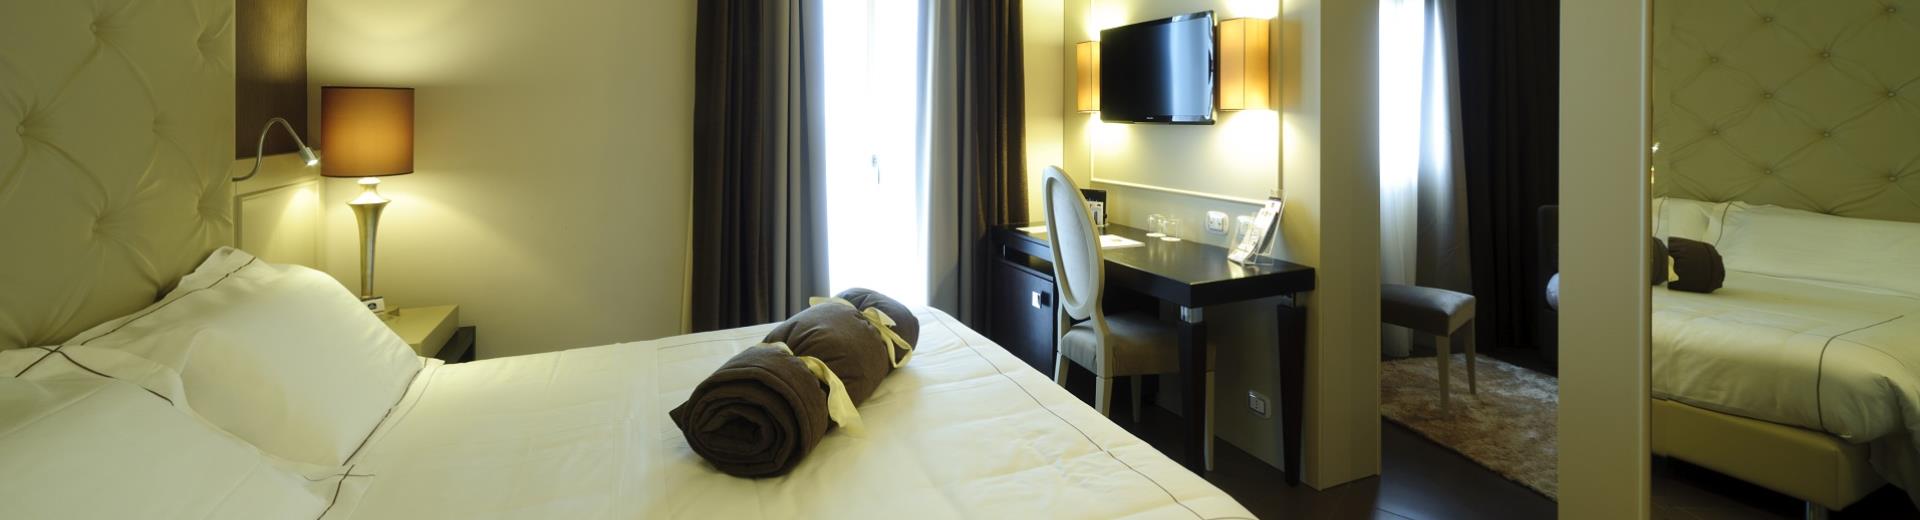 The elegant junior suites at the Best Western Plus Hotel Perla del Porto in Catanzaro Lido